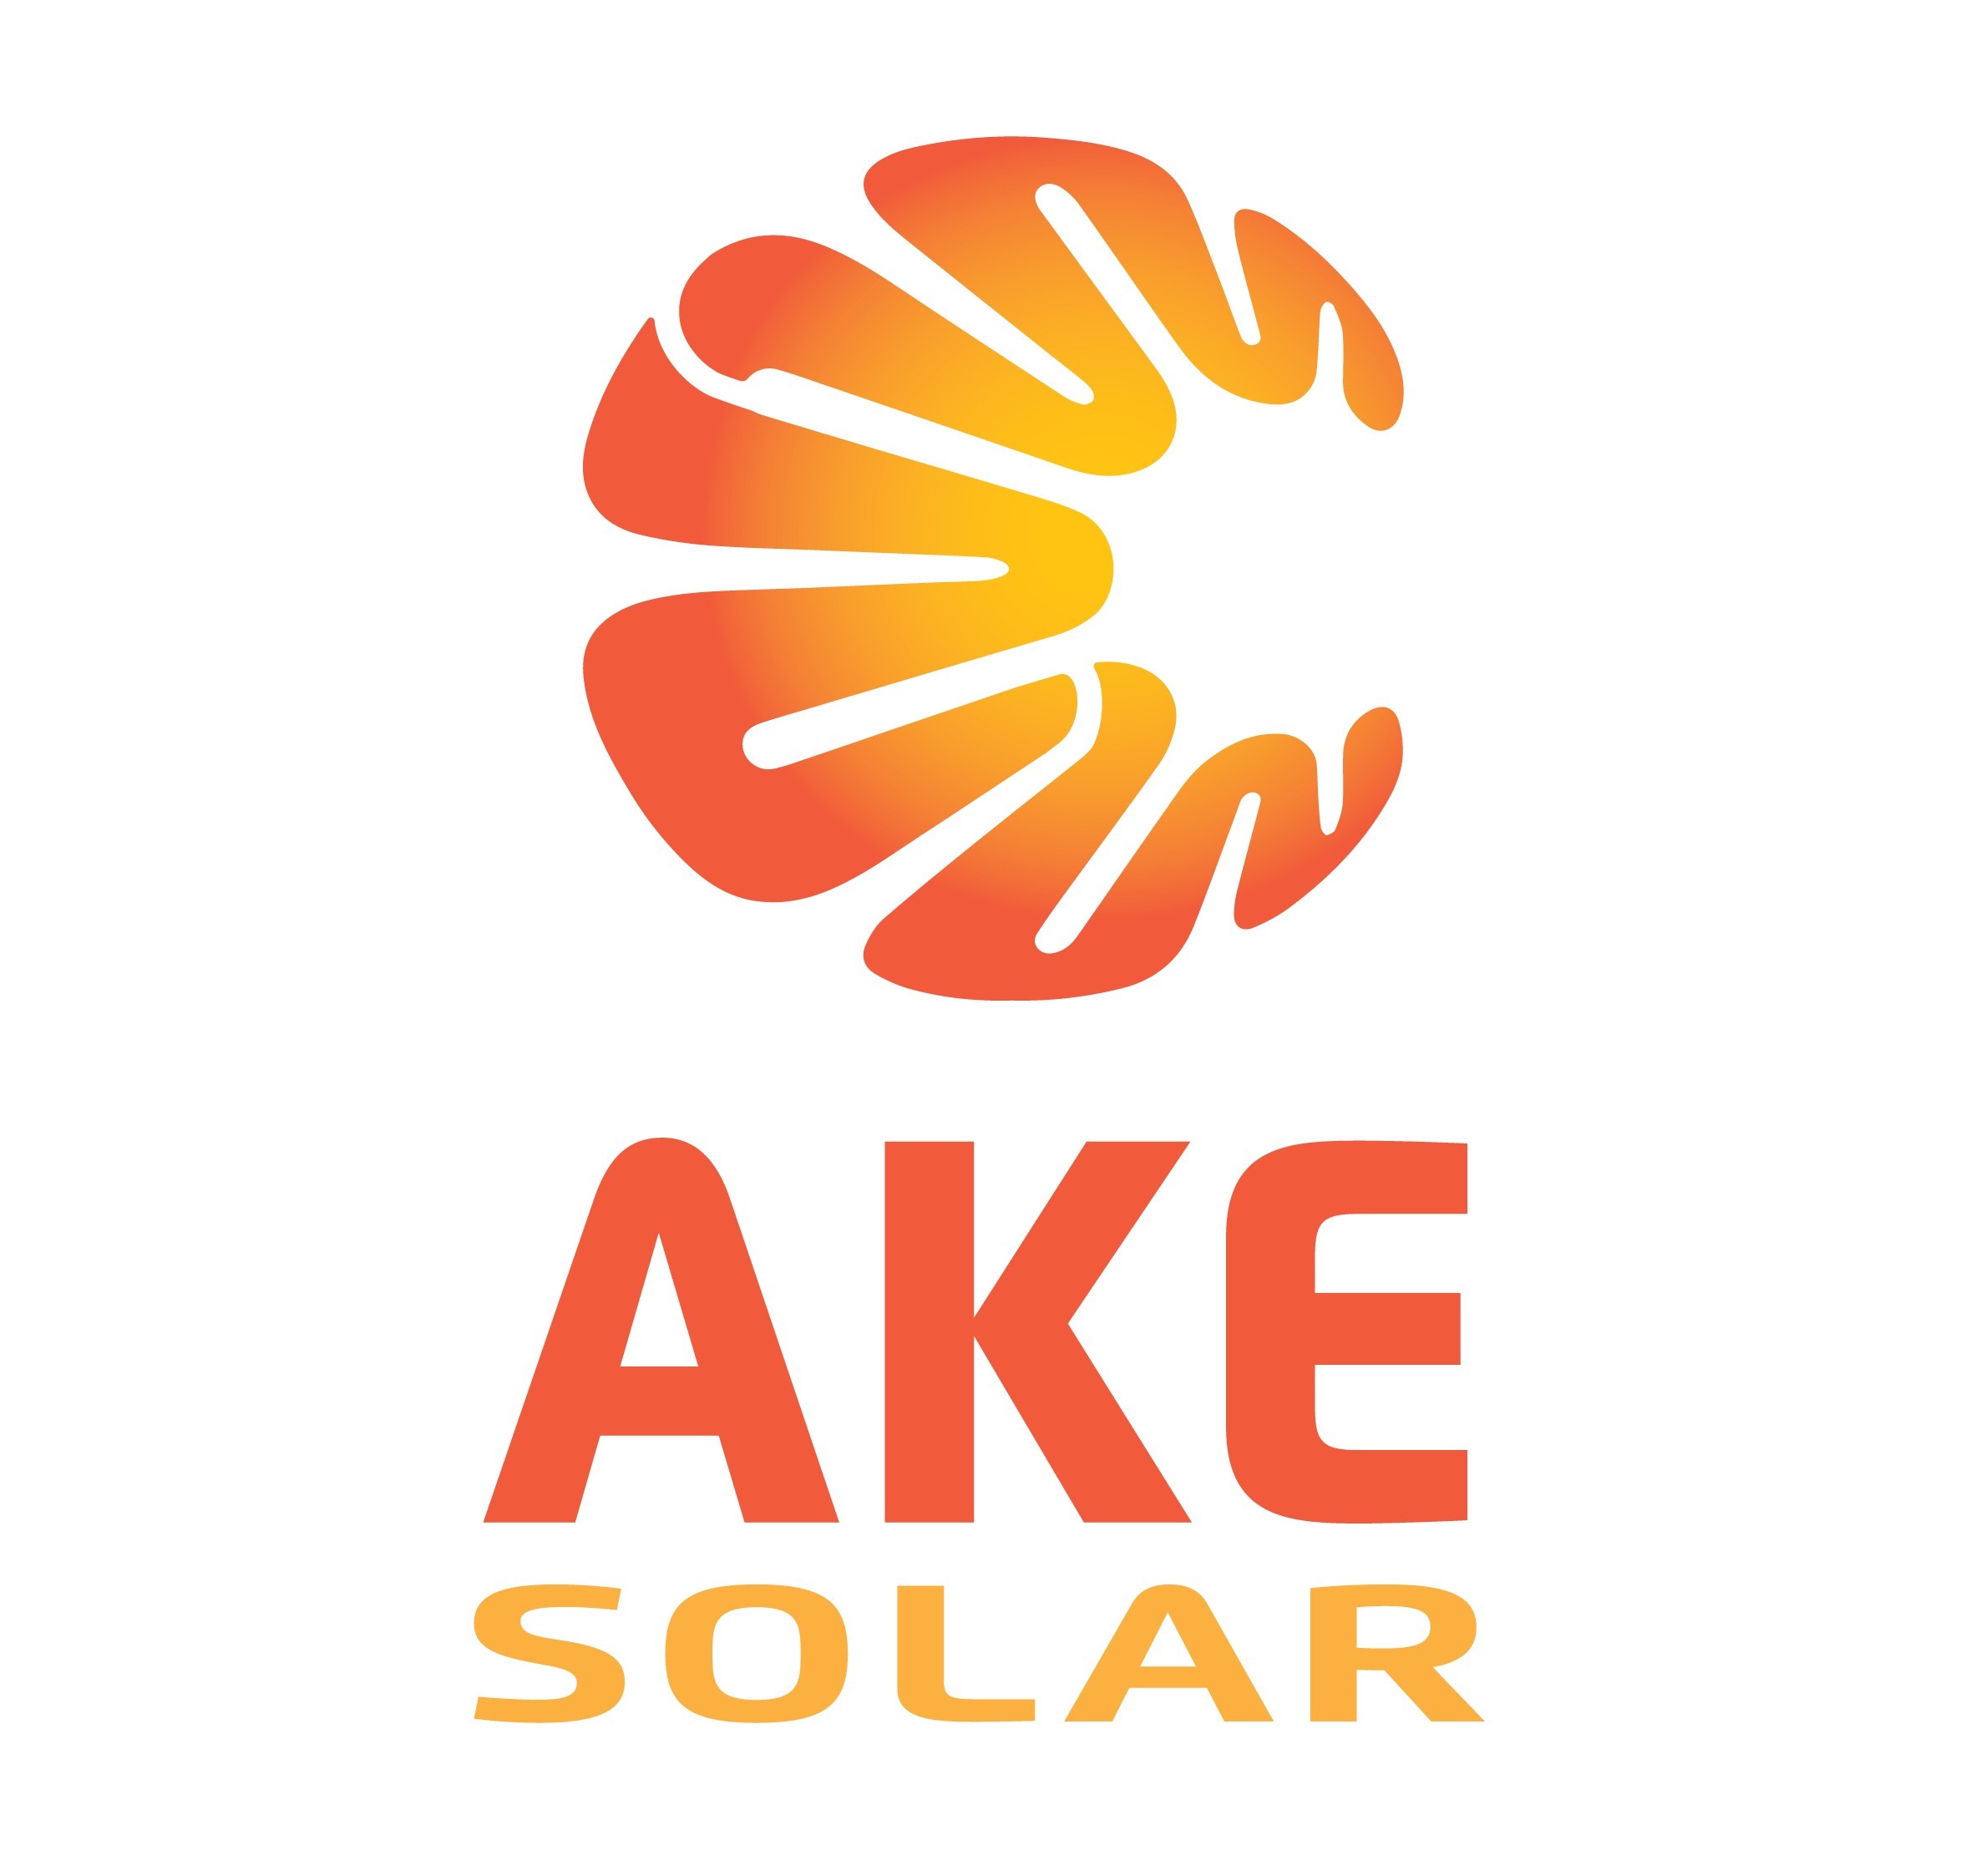 AKE Solar